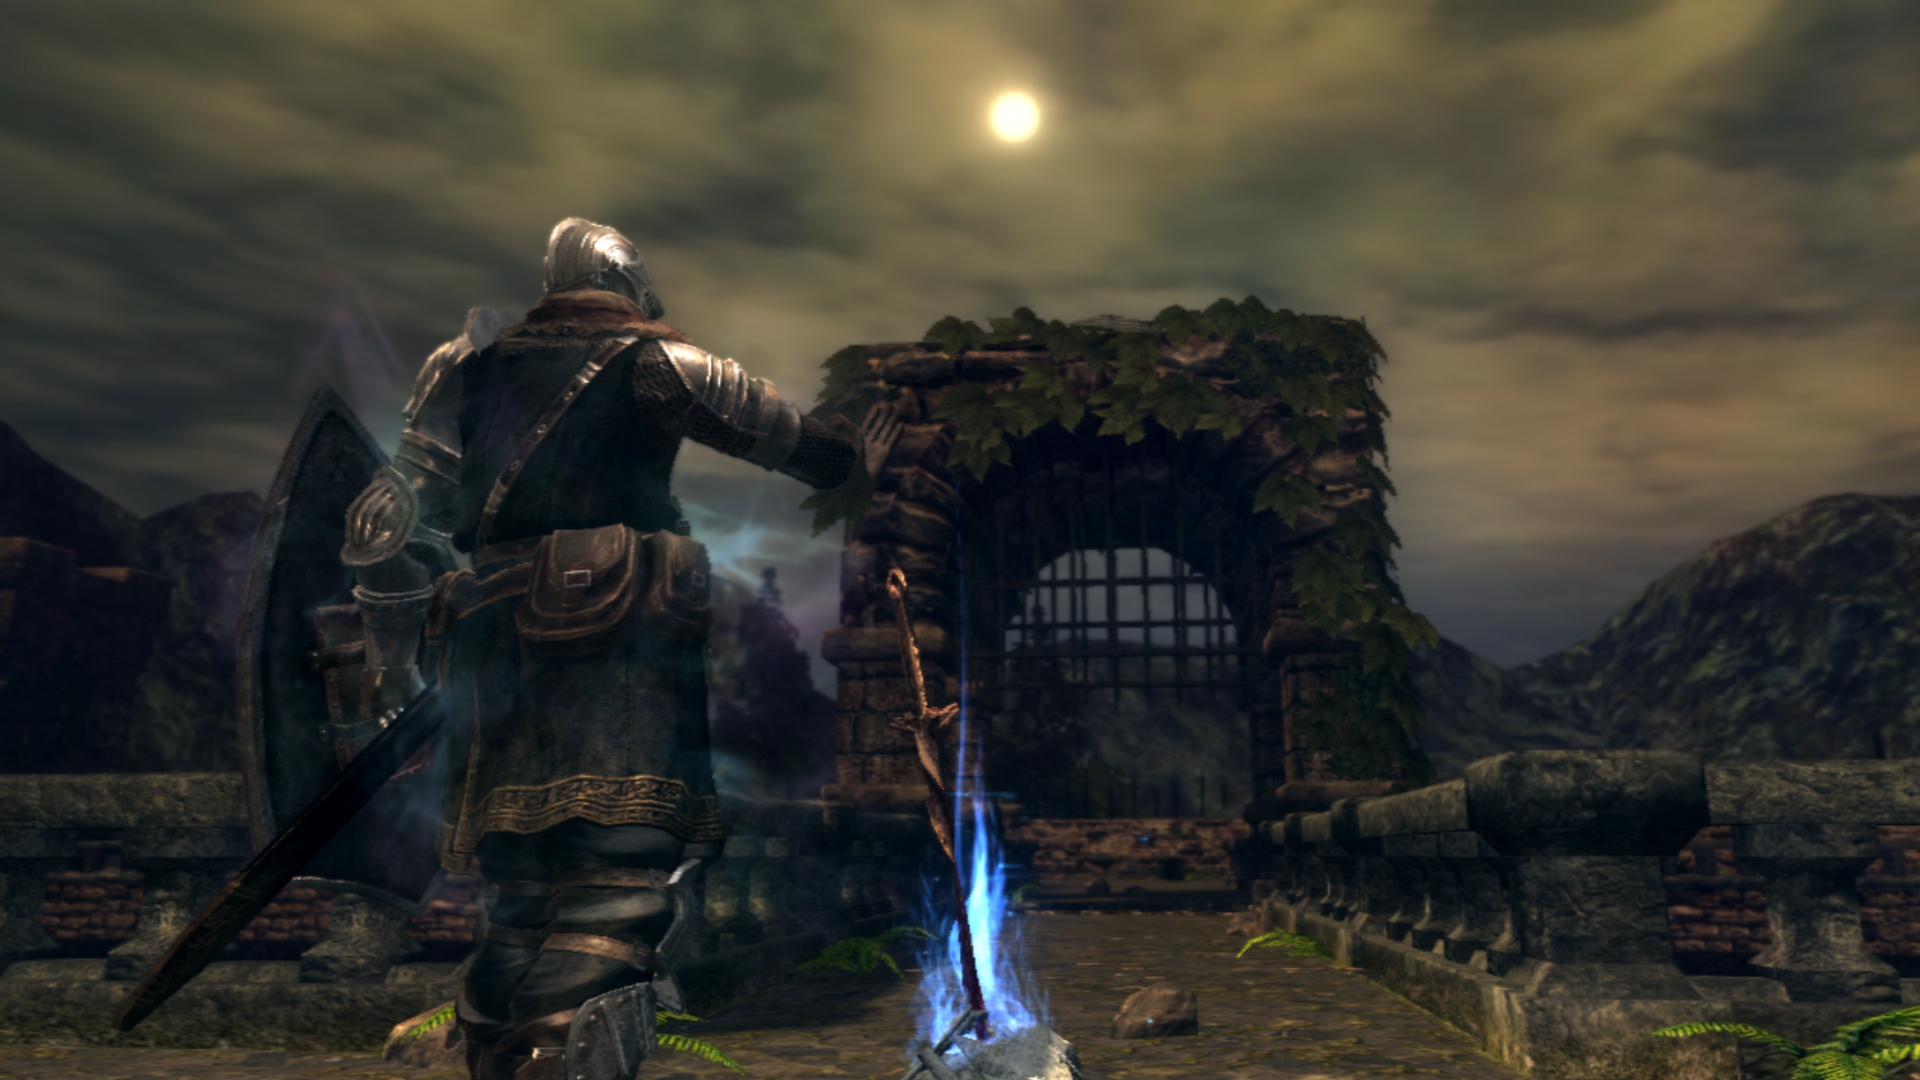 Dark Souls Prepare to Die Edition (Steam key) -- RU